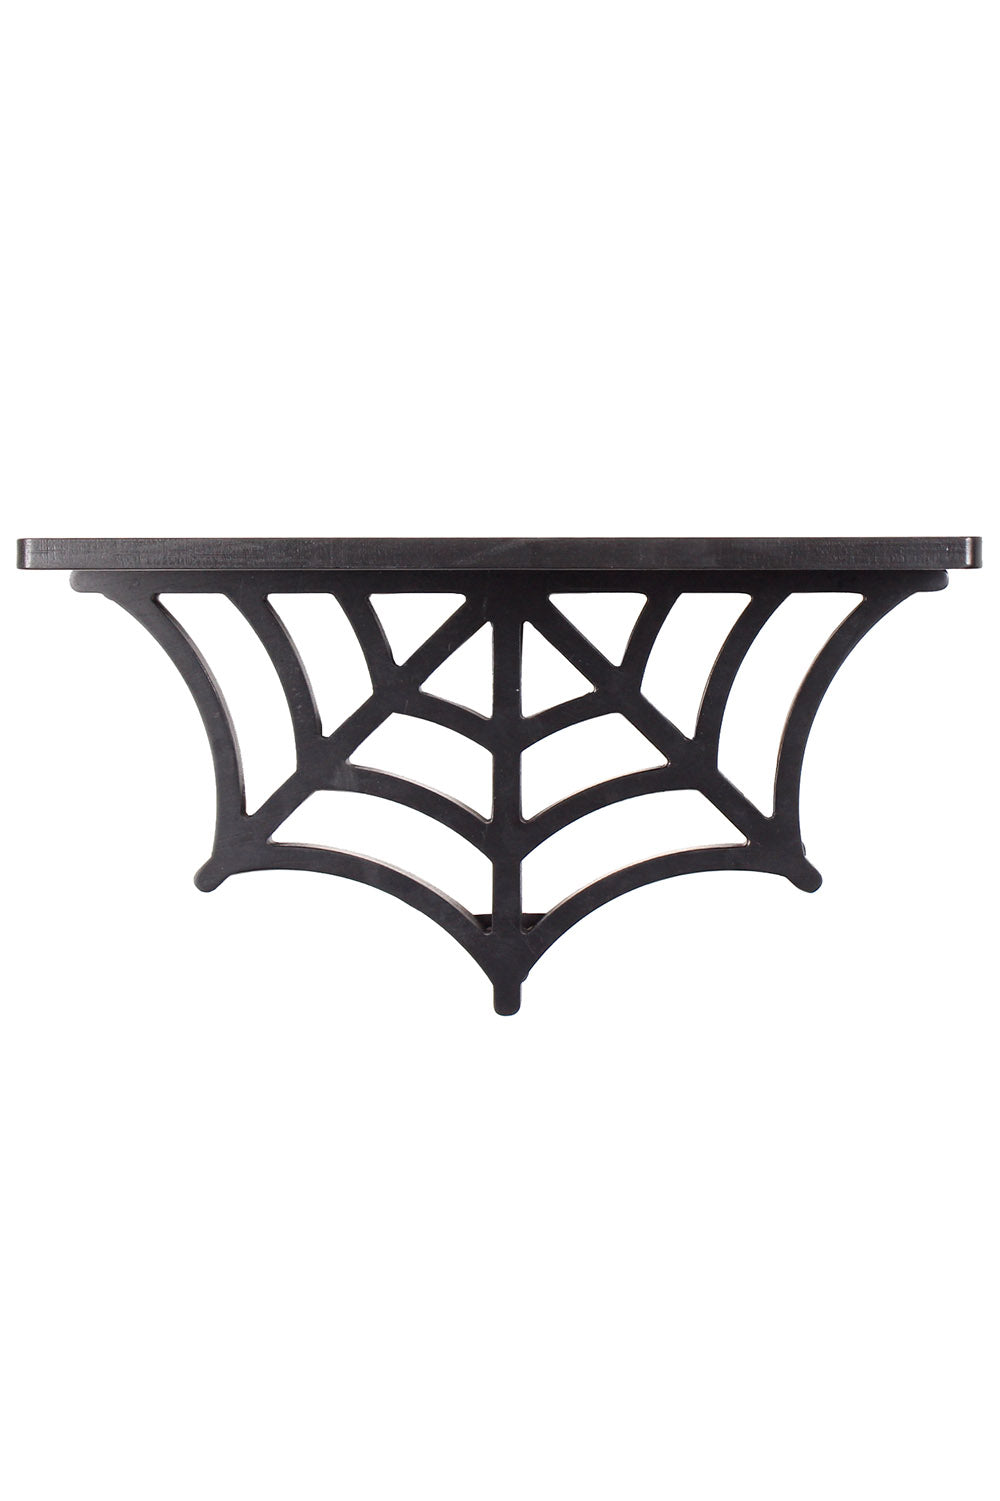 Spiderweb Shelf